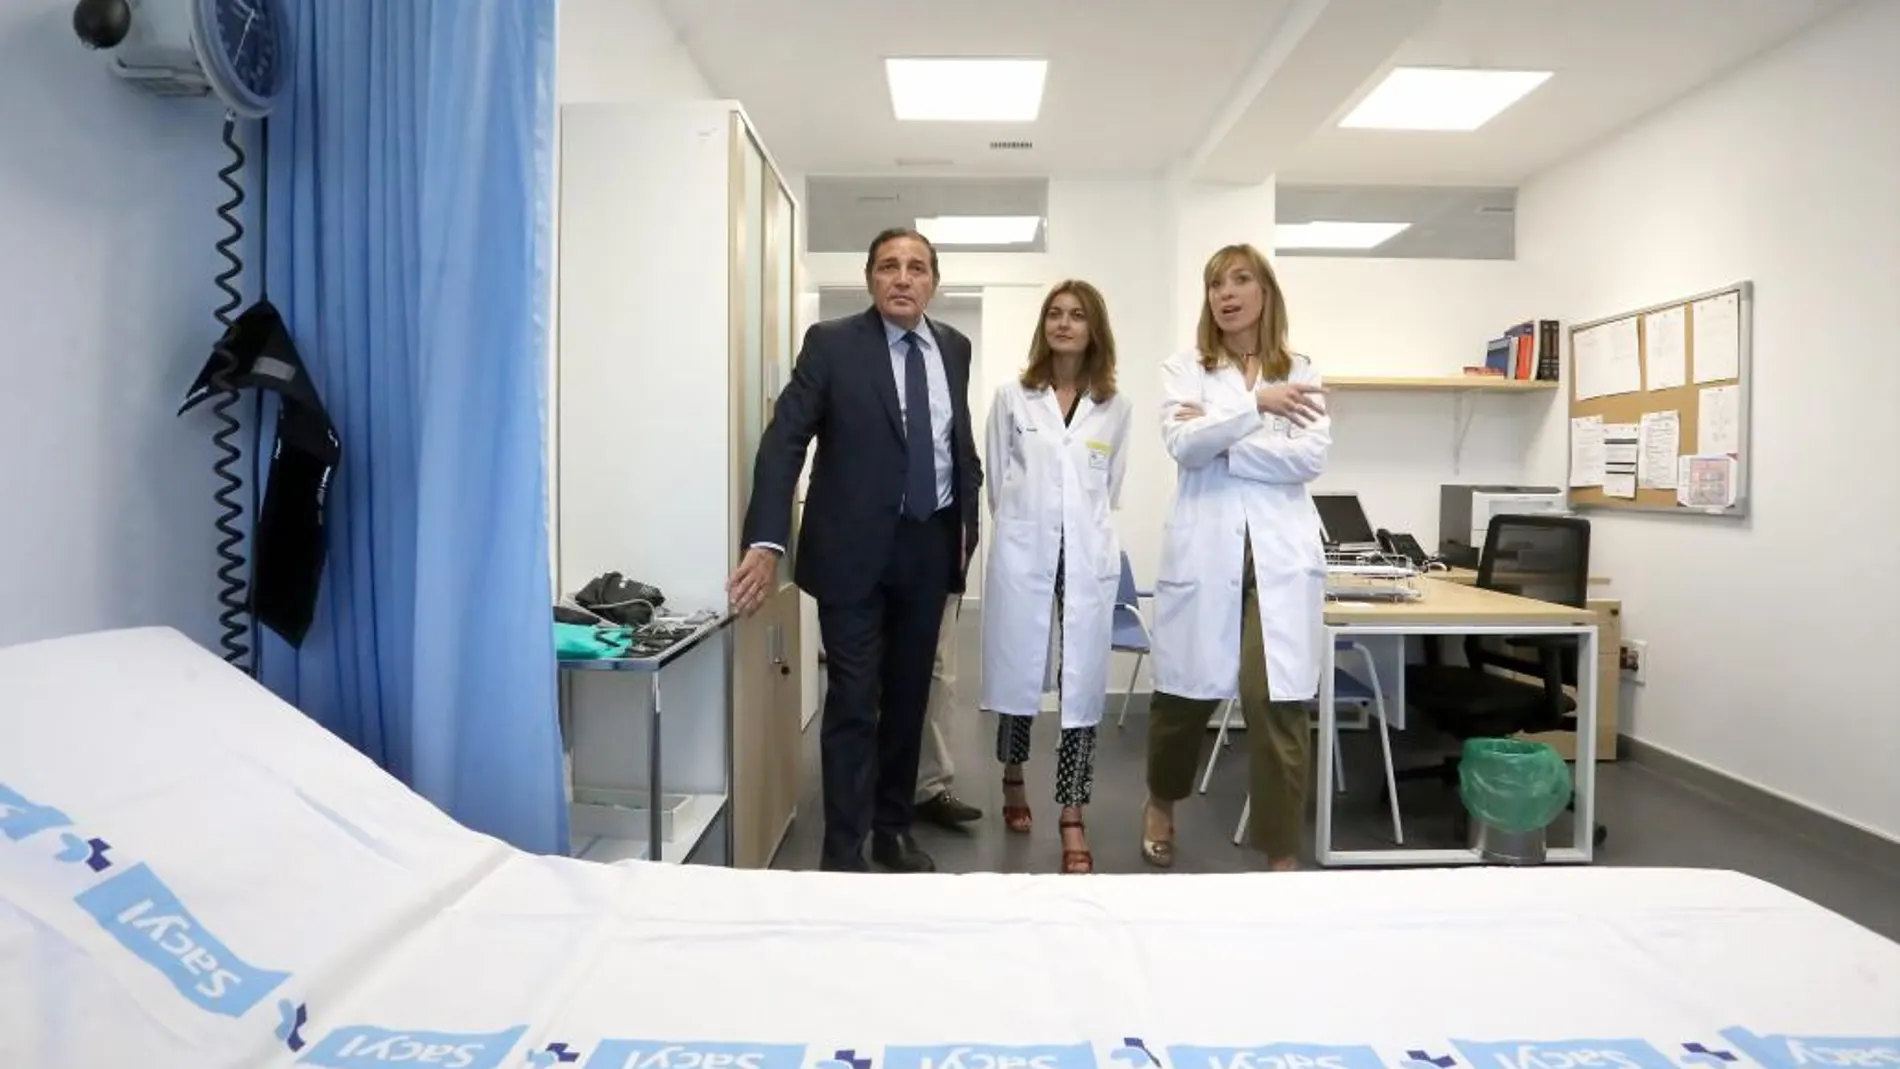 El consejero de Sanidad, Antonio Sáez Aguado, durante una reciente visita a las nuevas instalaciones del centro de salud de Esguevillas de Esgueva, en Valladolid